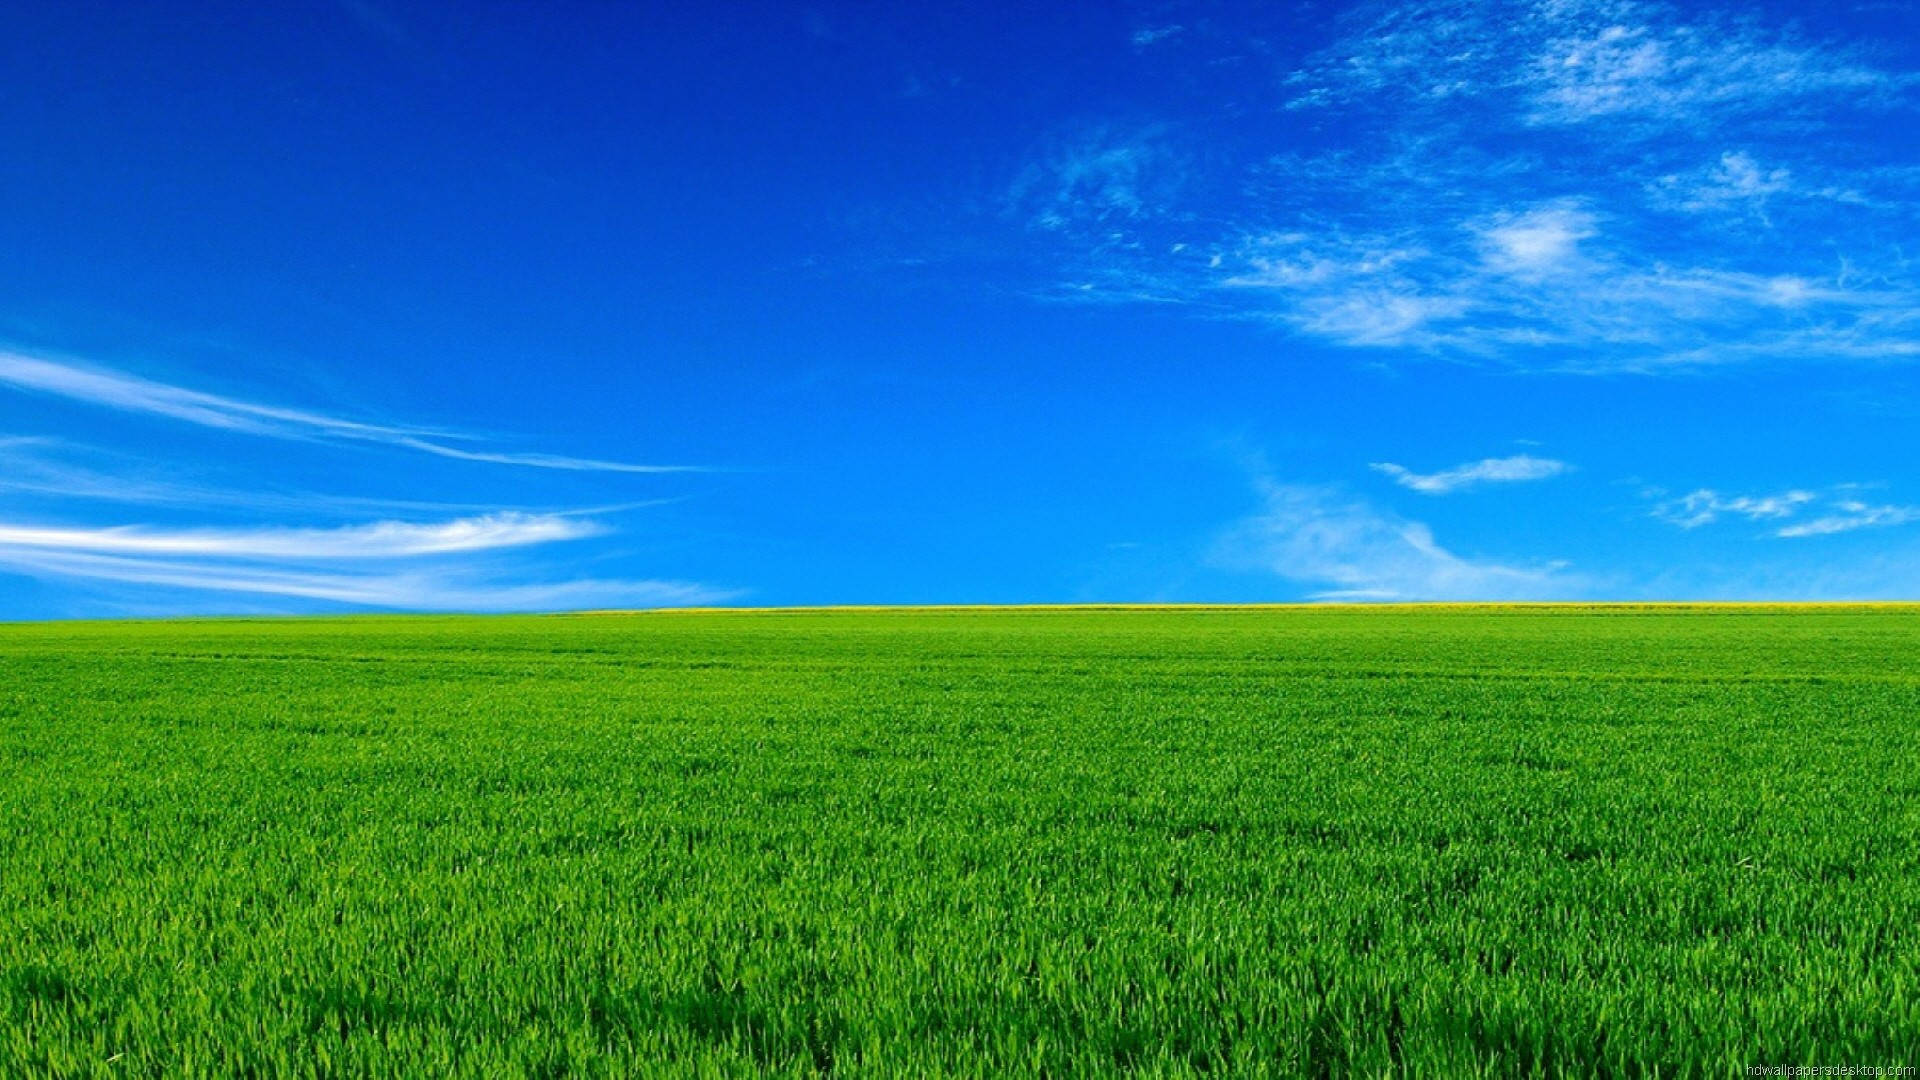 Download 1920x1080 Full Hd Nature Green Grass Blue Sky Wallpaper |  